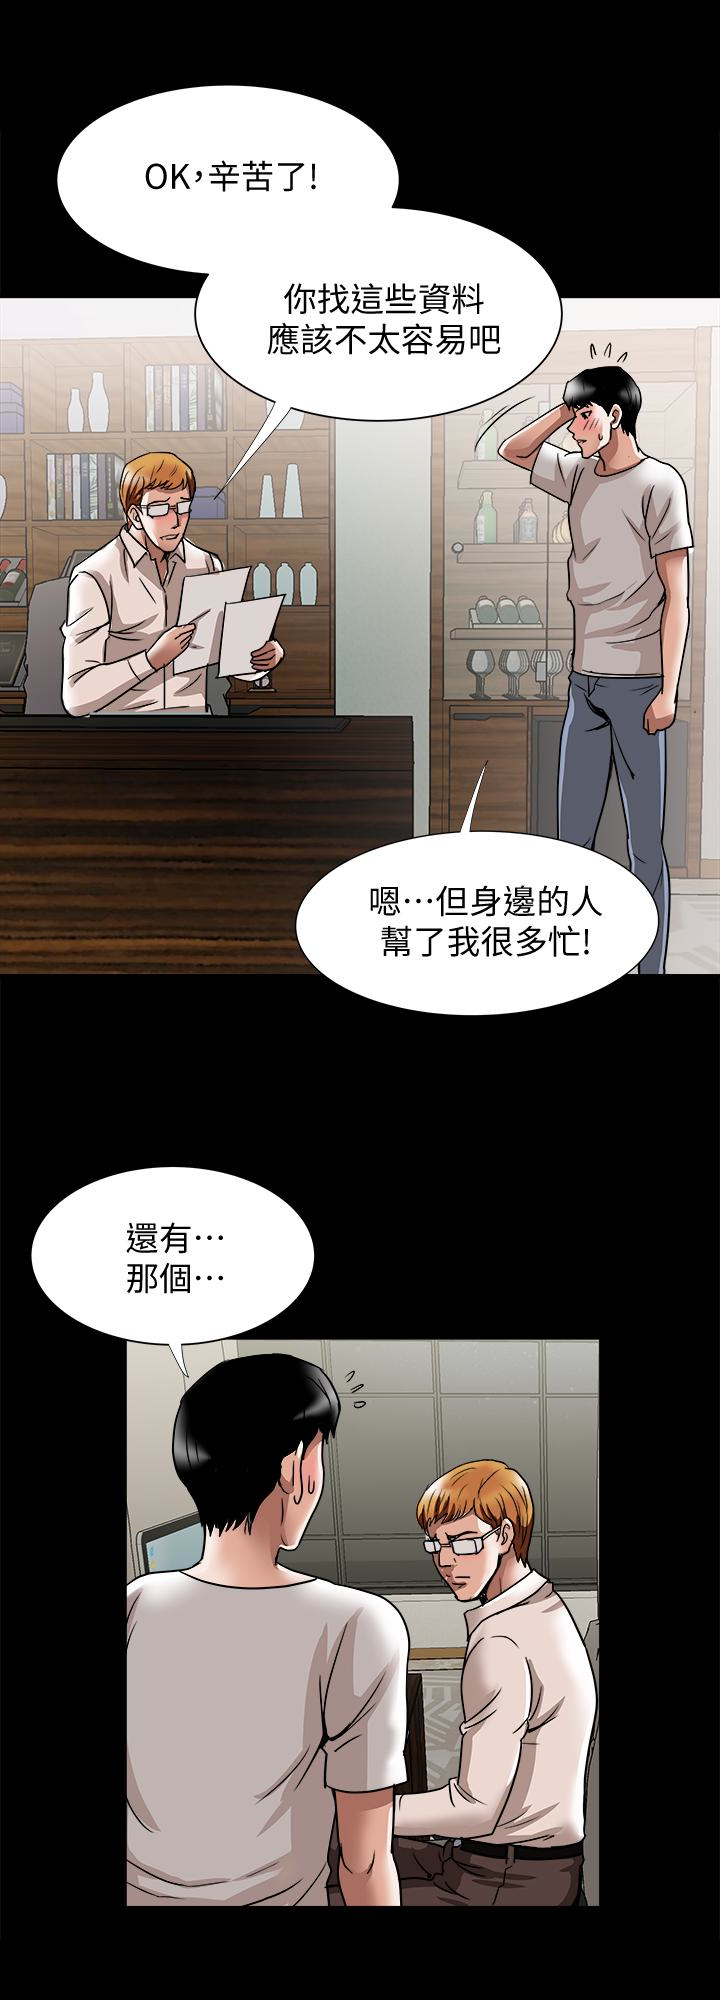 韩国污漫画 別人的老婆 第35话(第2季)-偷窥的欲望 8